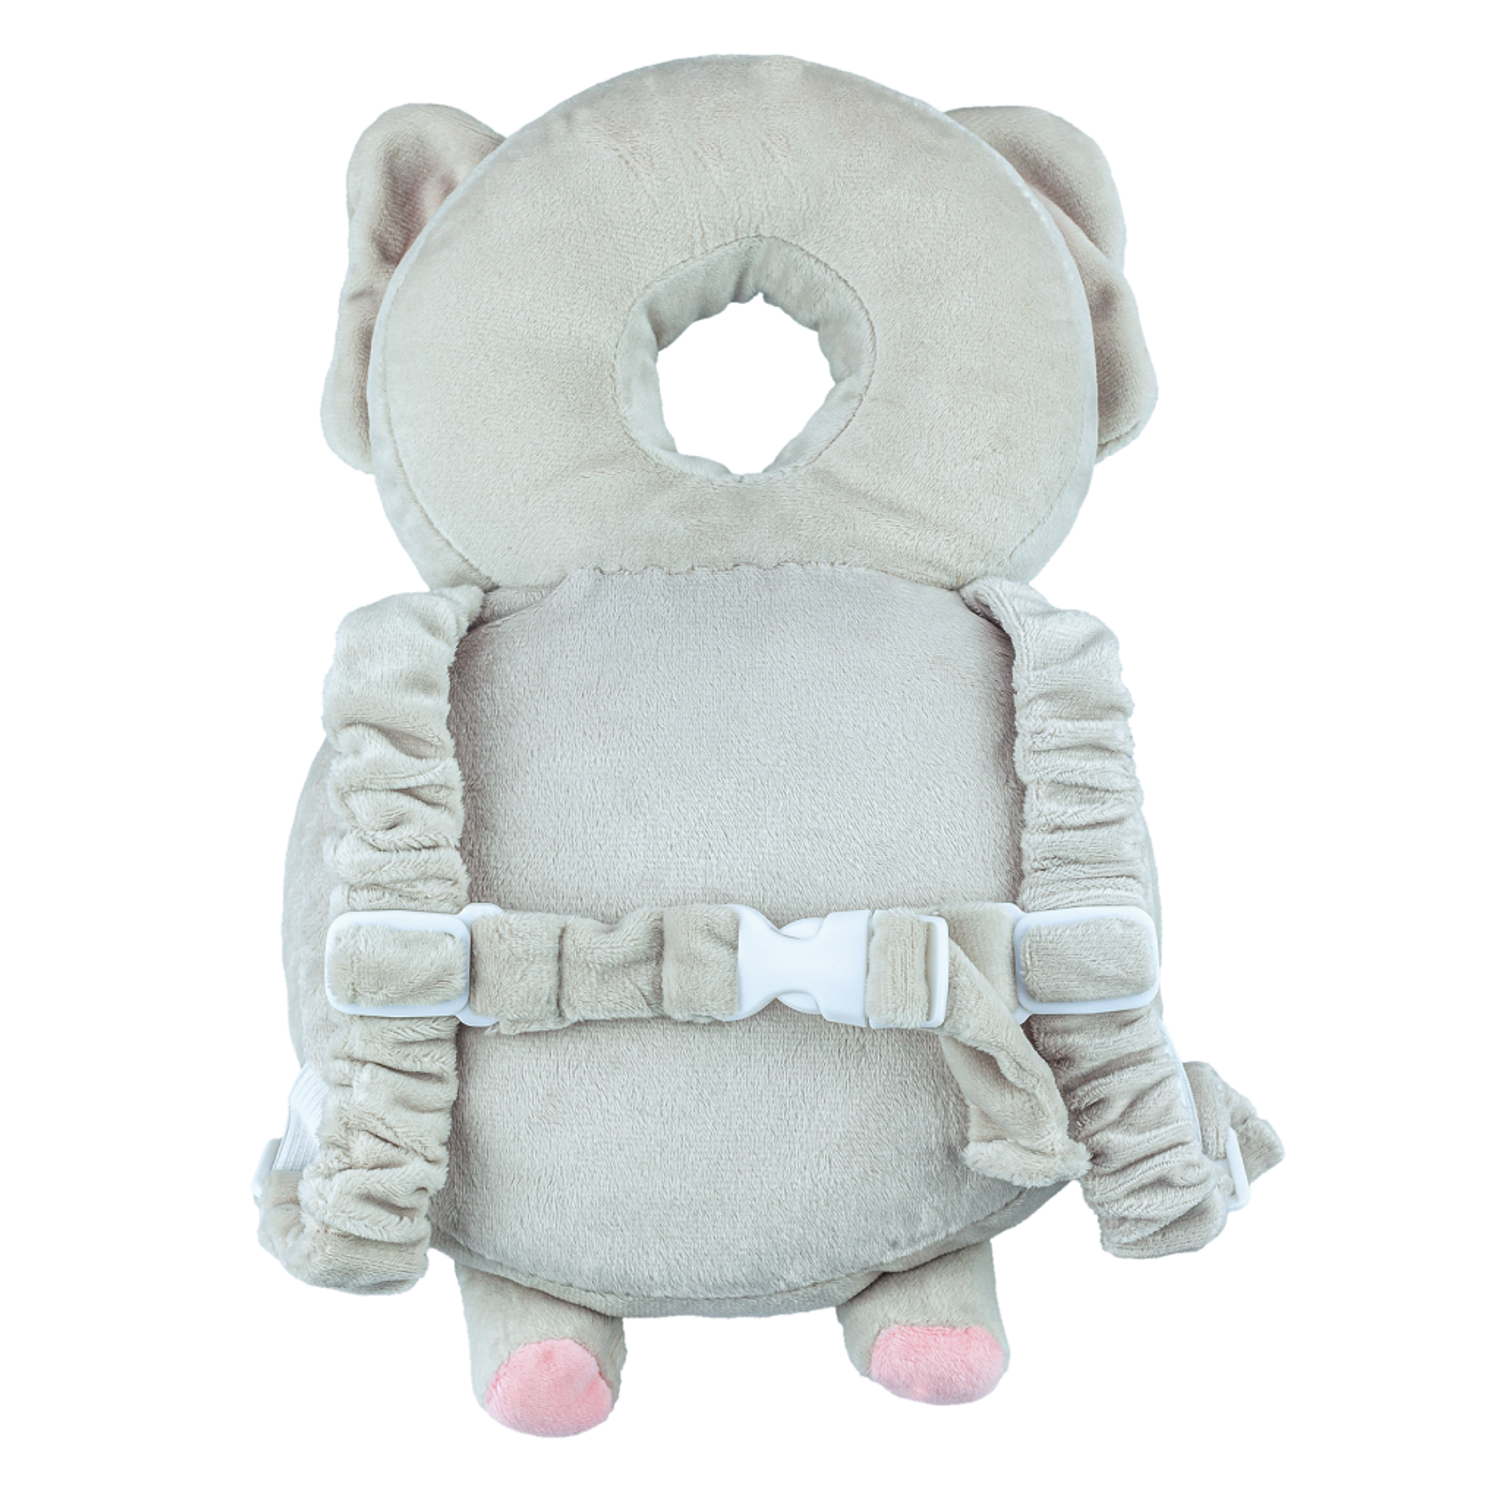 Защита для головы малыша Solmax защитная подушка- рюкзачок для ребенка - фото 5